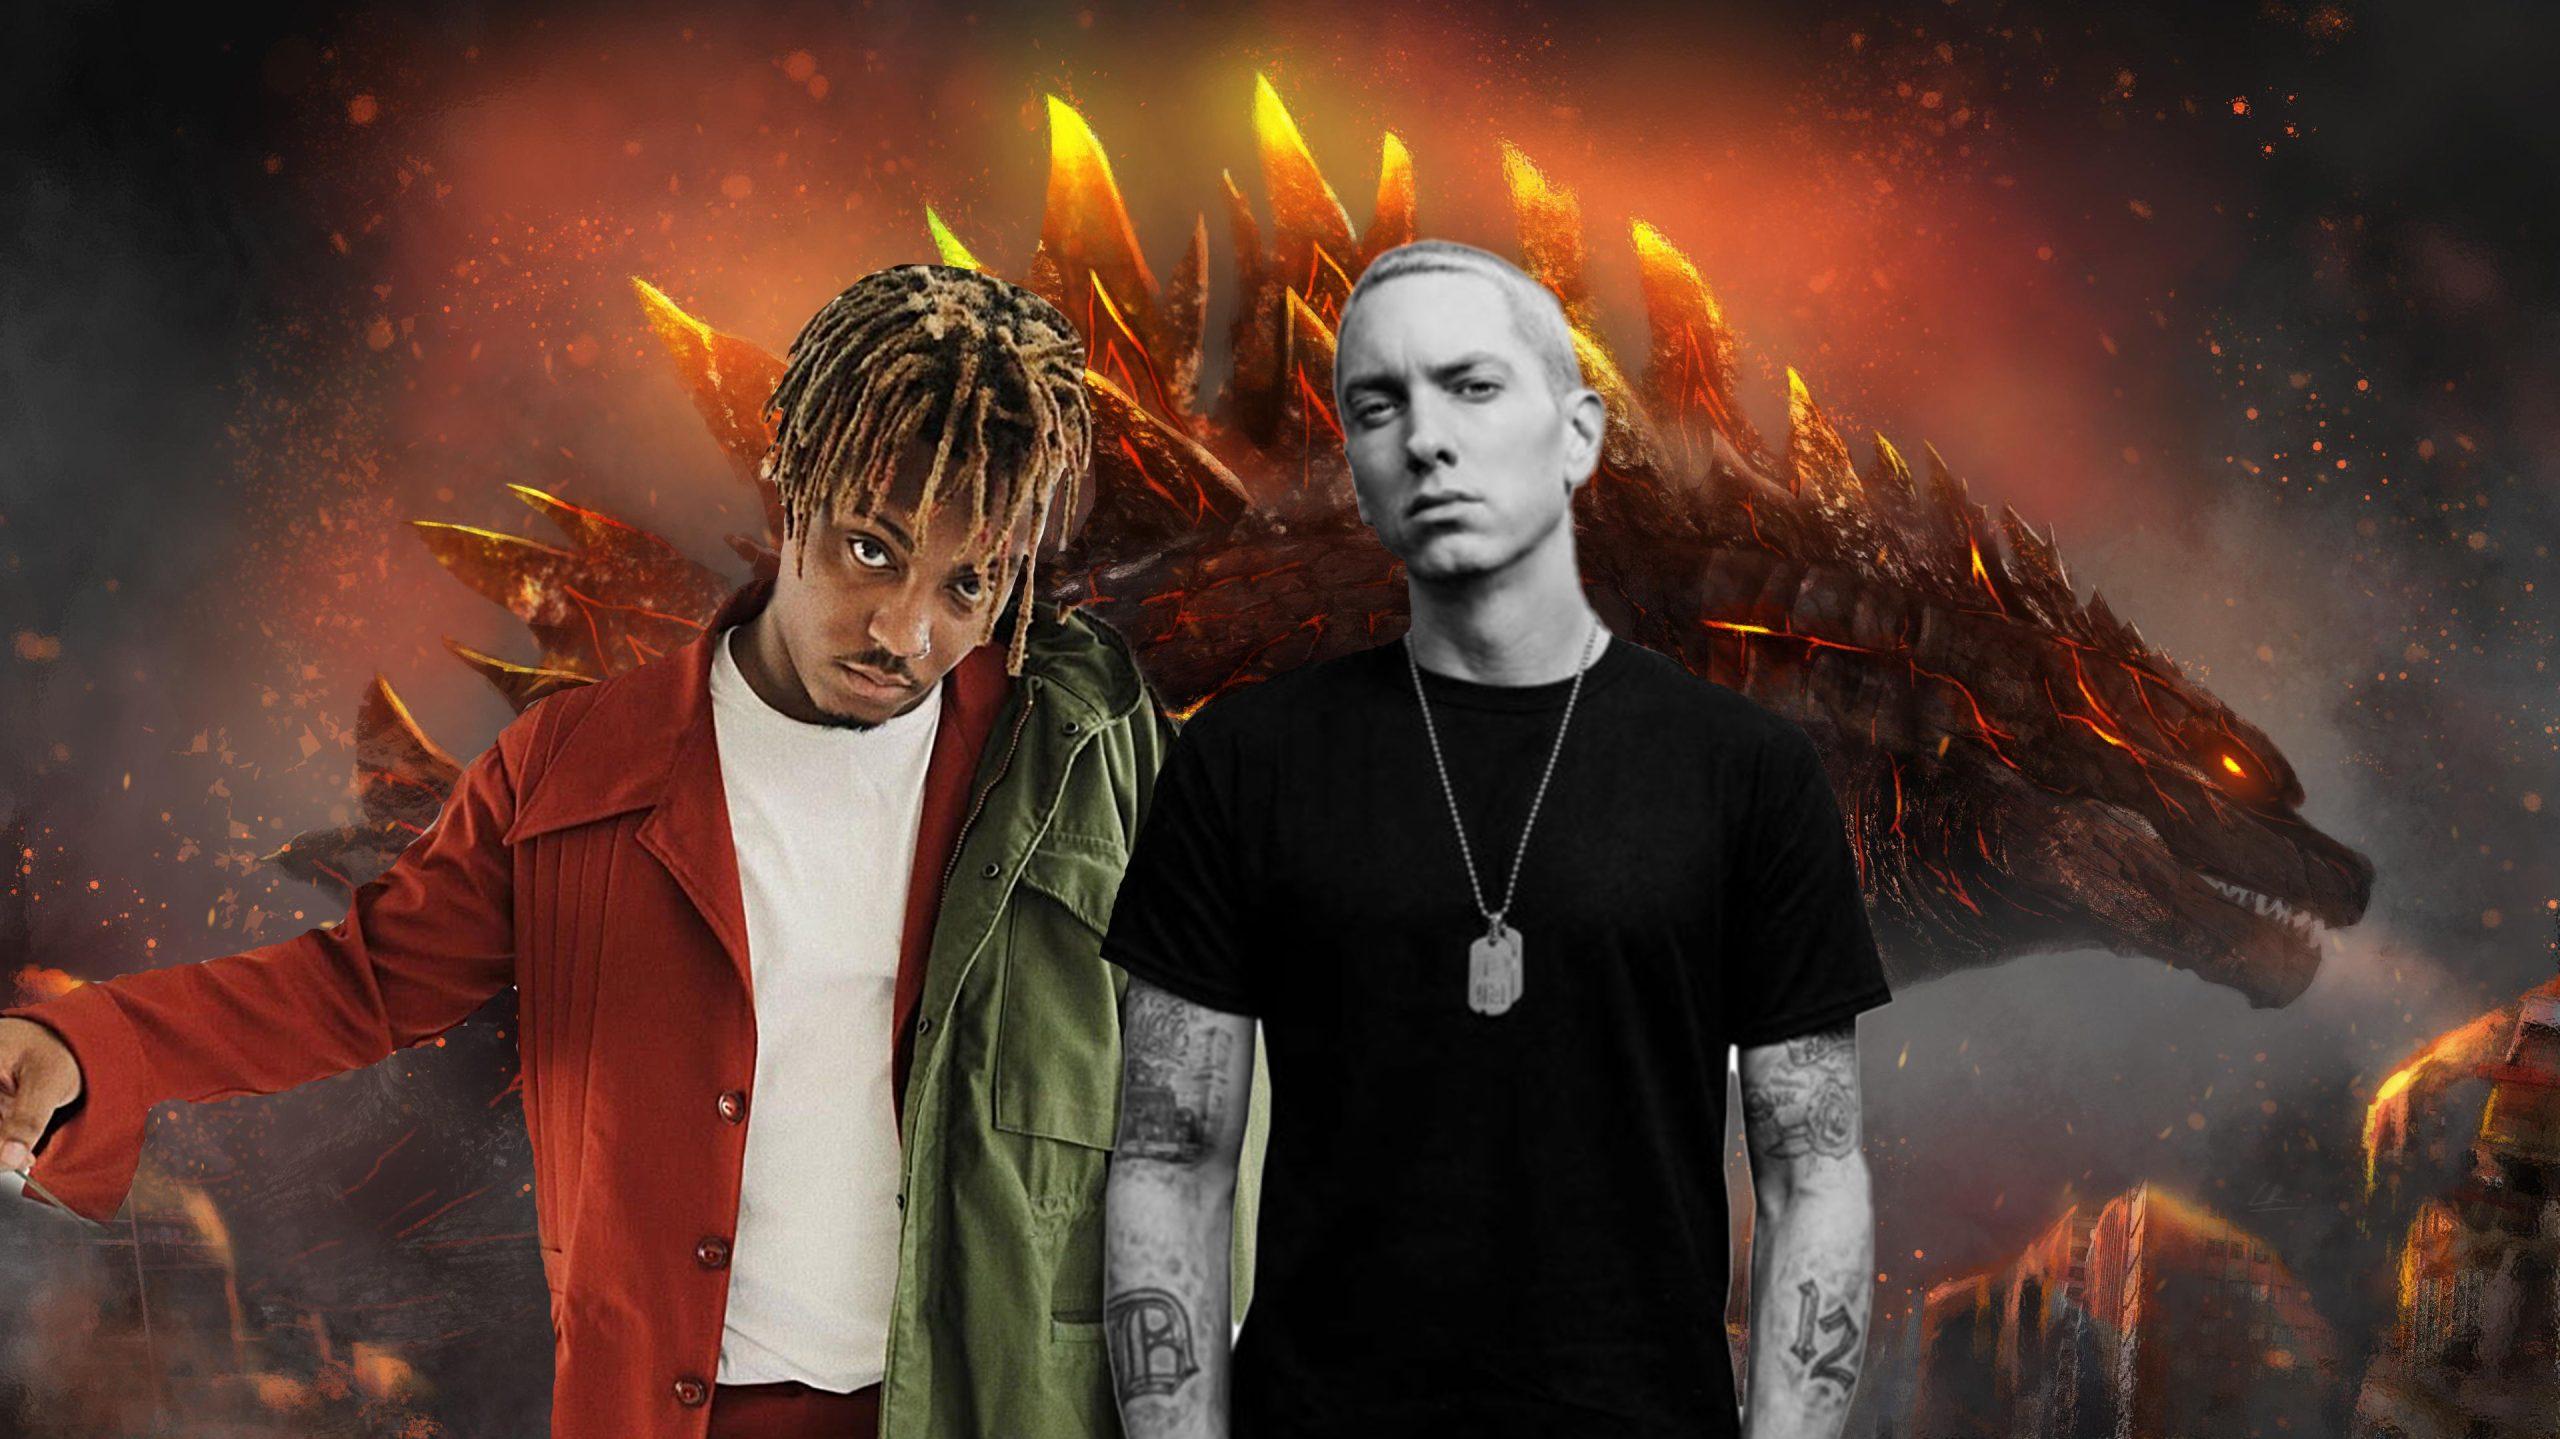 Godzilla by Eminem Juice WRLD hits Billion streams on Spotify